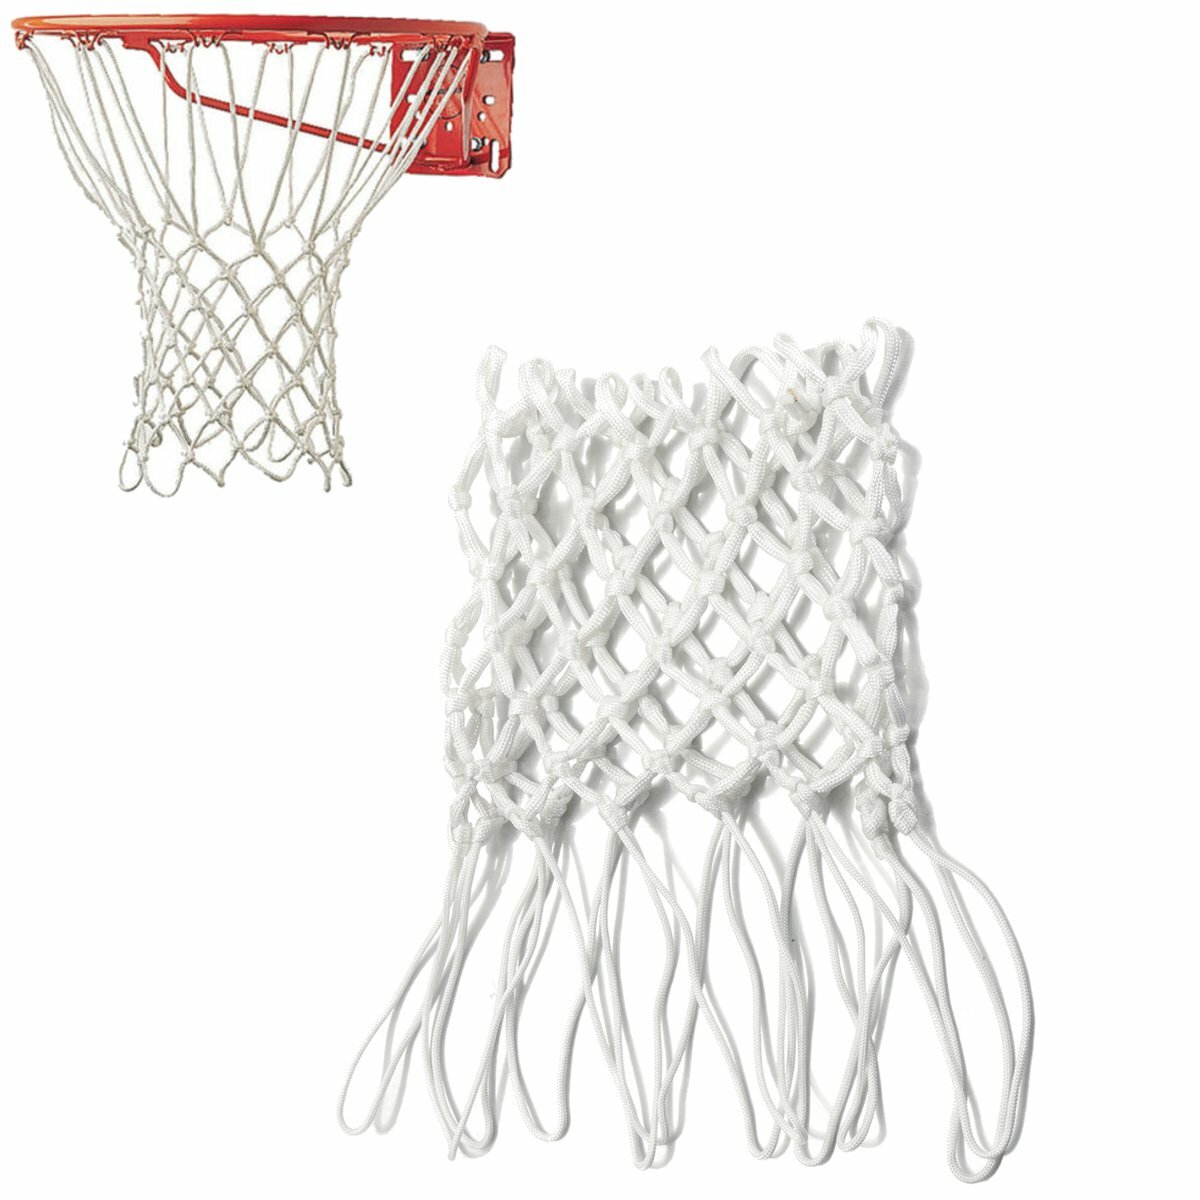 

Детская баскетбольная сетка 50 см, 12 петель, сетка для баскетбольного кольца, профессиональная сменная сетка, детская Н